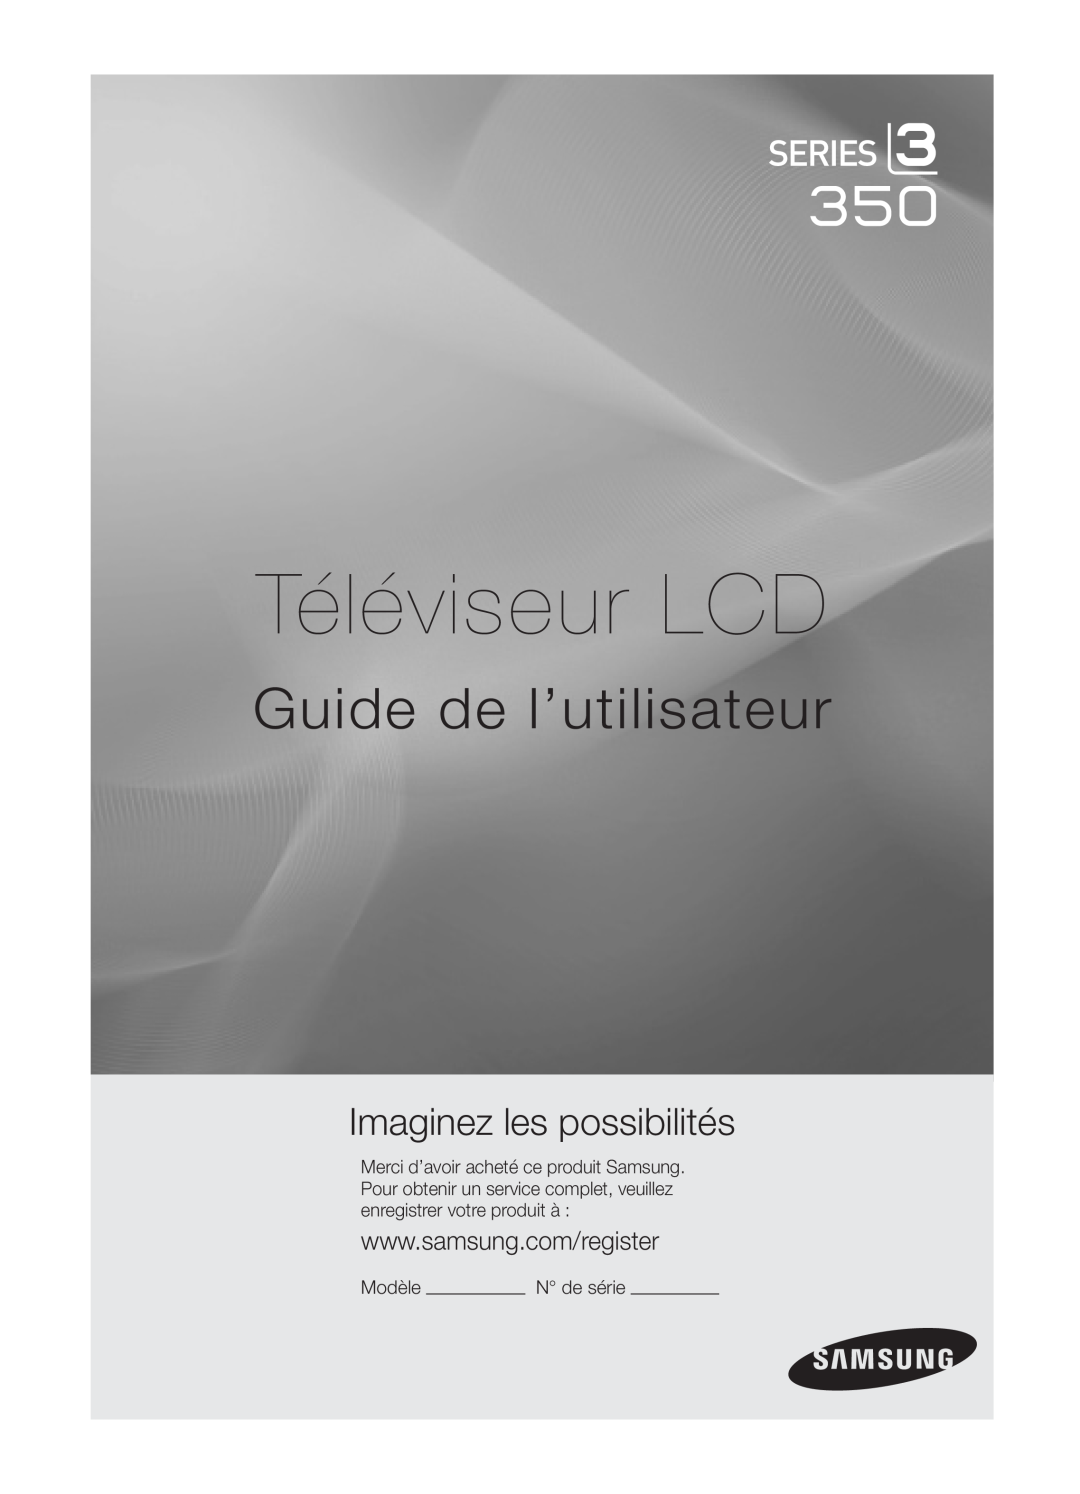 Samsung BN68-02620B-06 user manual Téléviseur LCD, Guide de l’utilisateur, Imaginez les possibilités, Modèle 